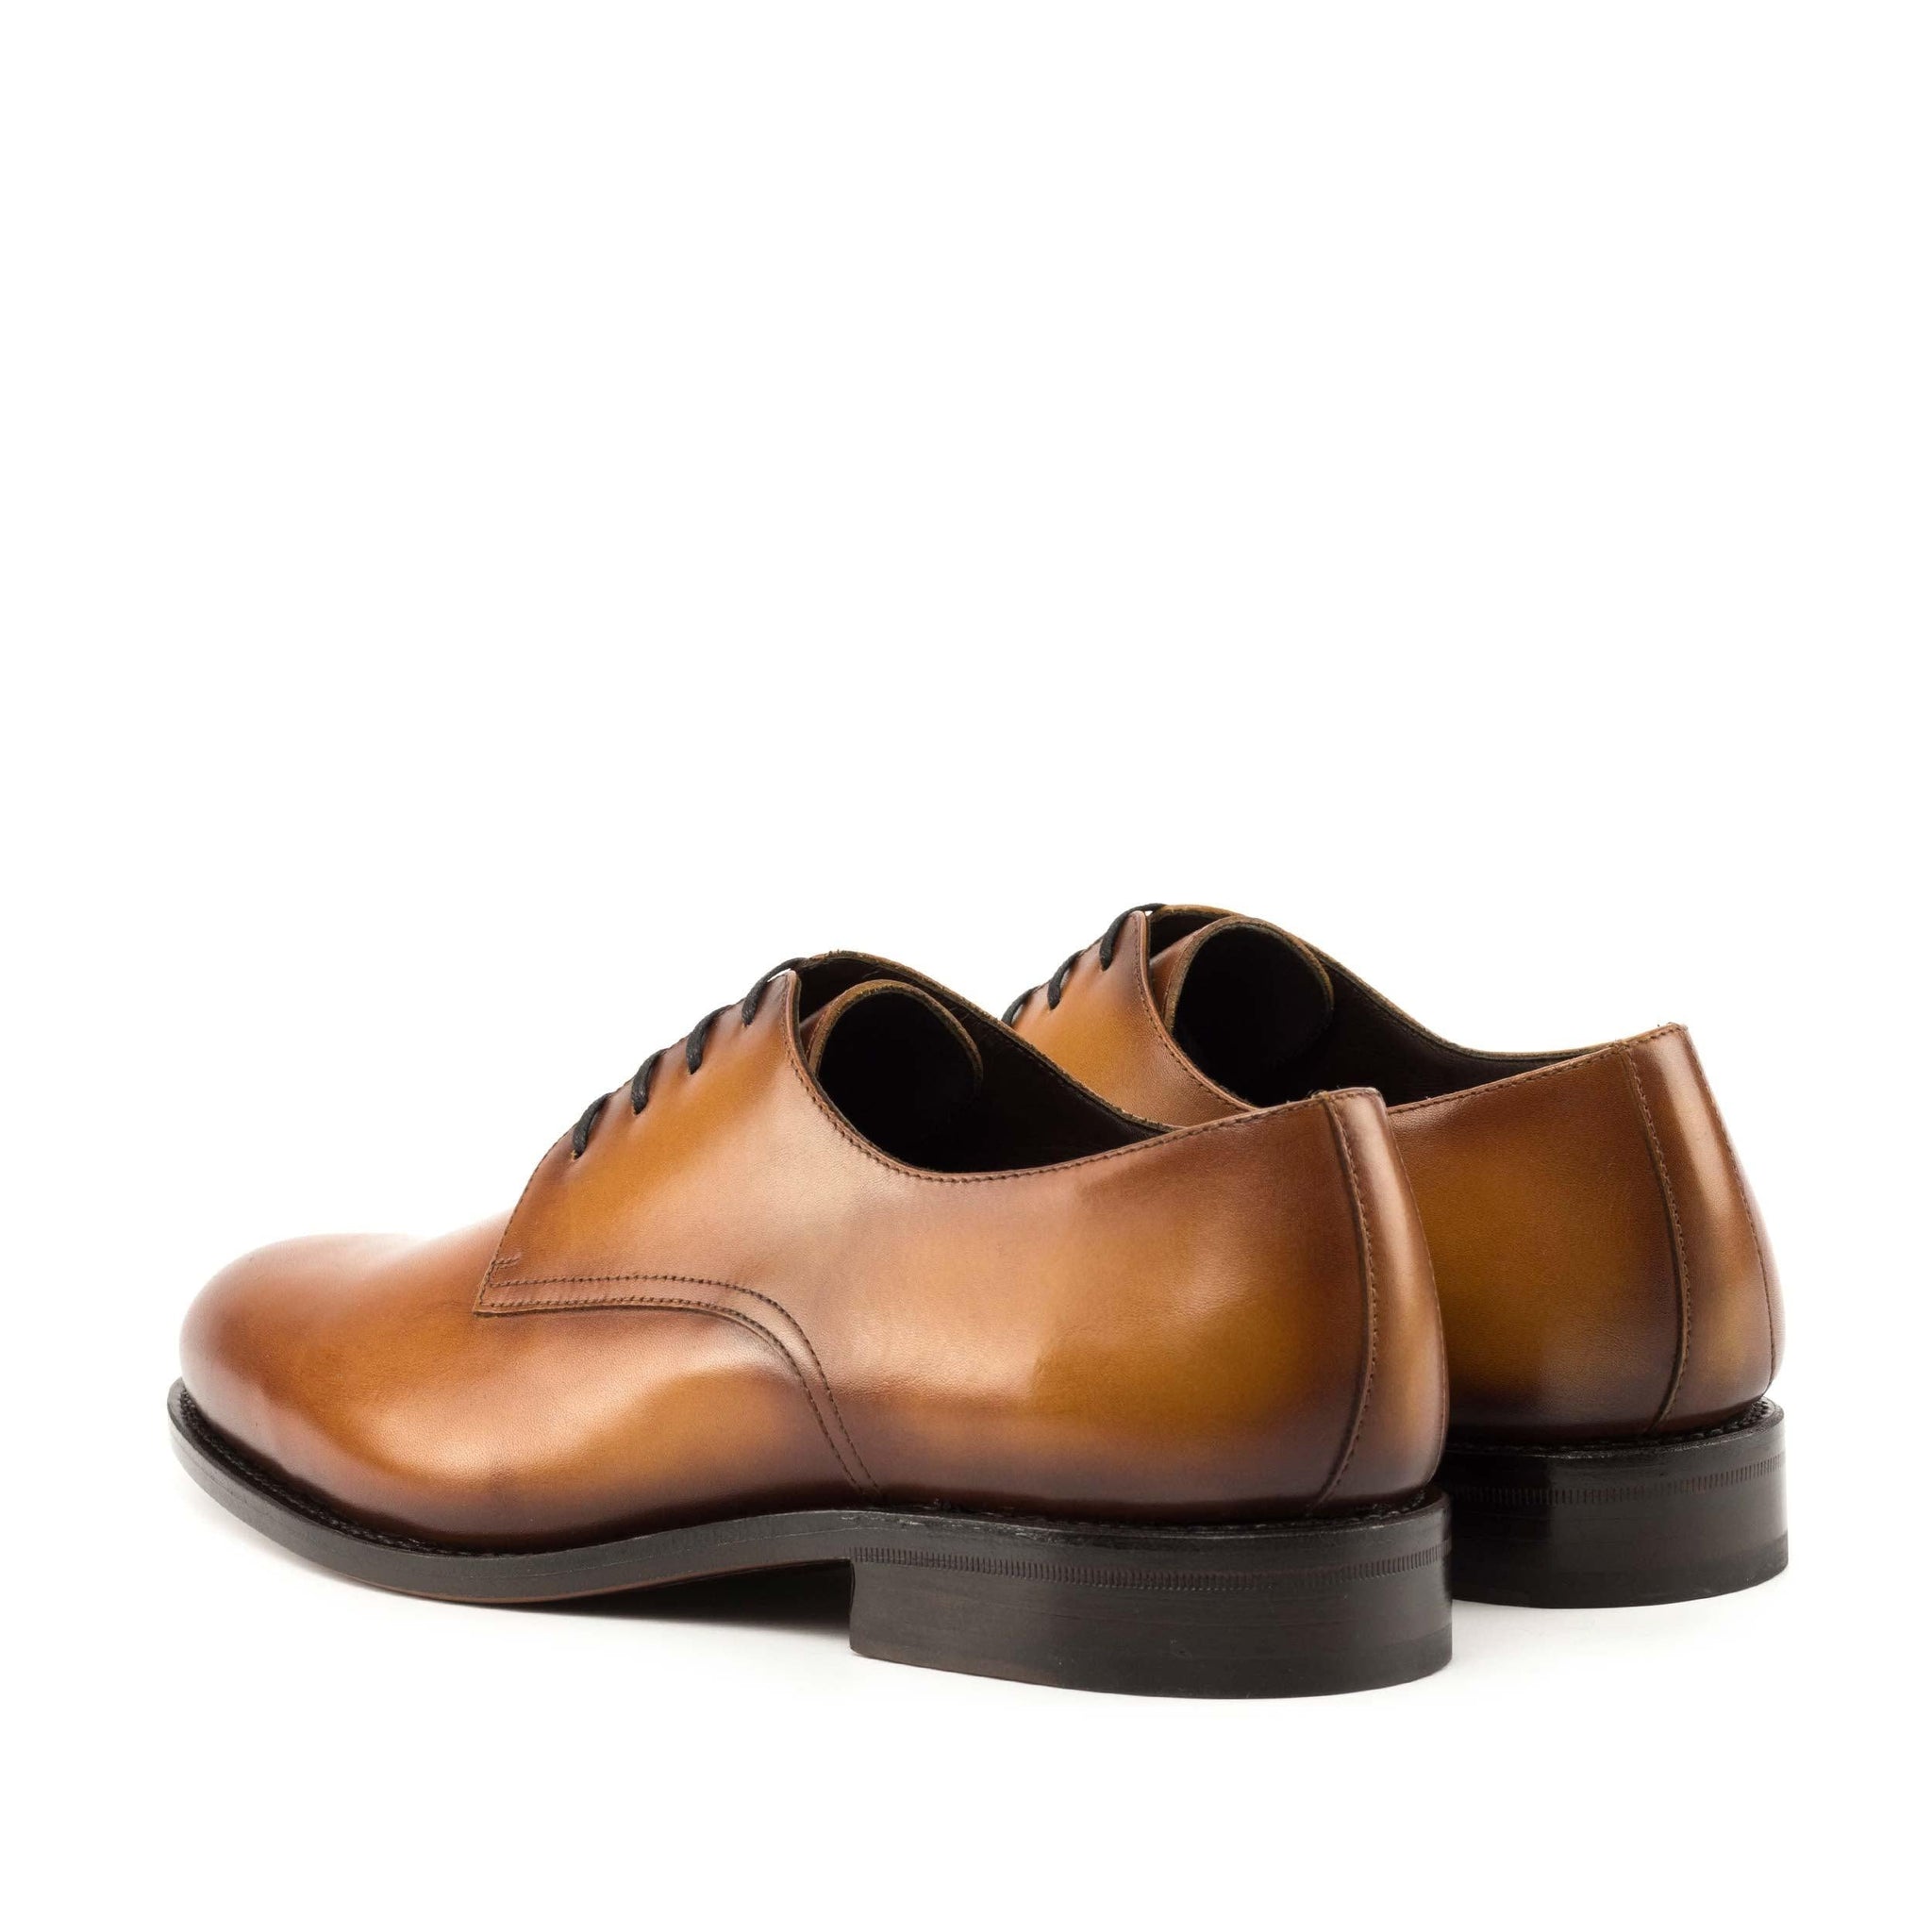 Cognac Derby Shoes - Luxury Leather Footwear 7.5